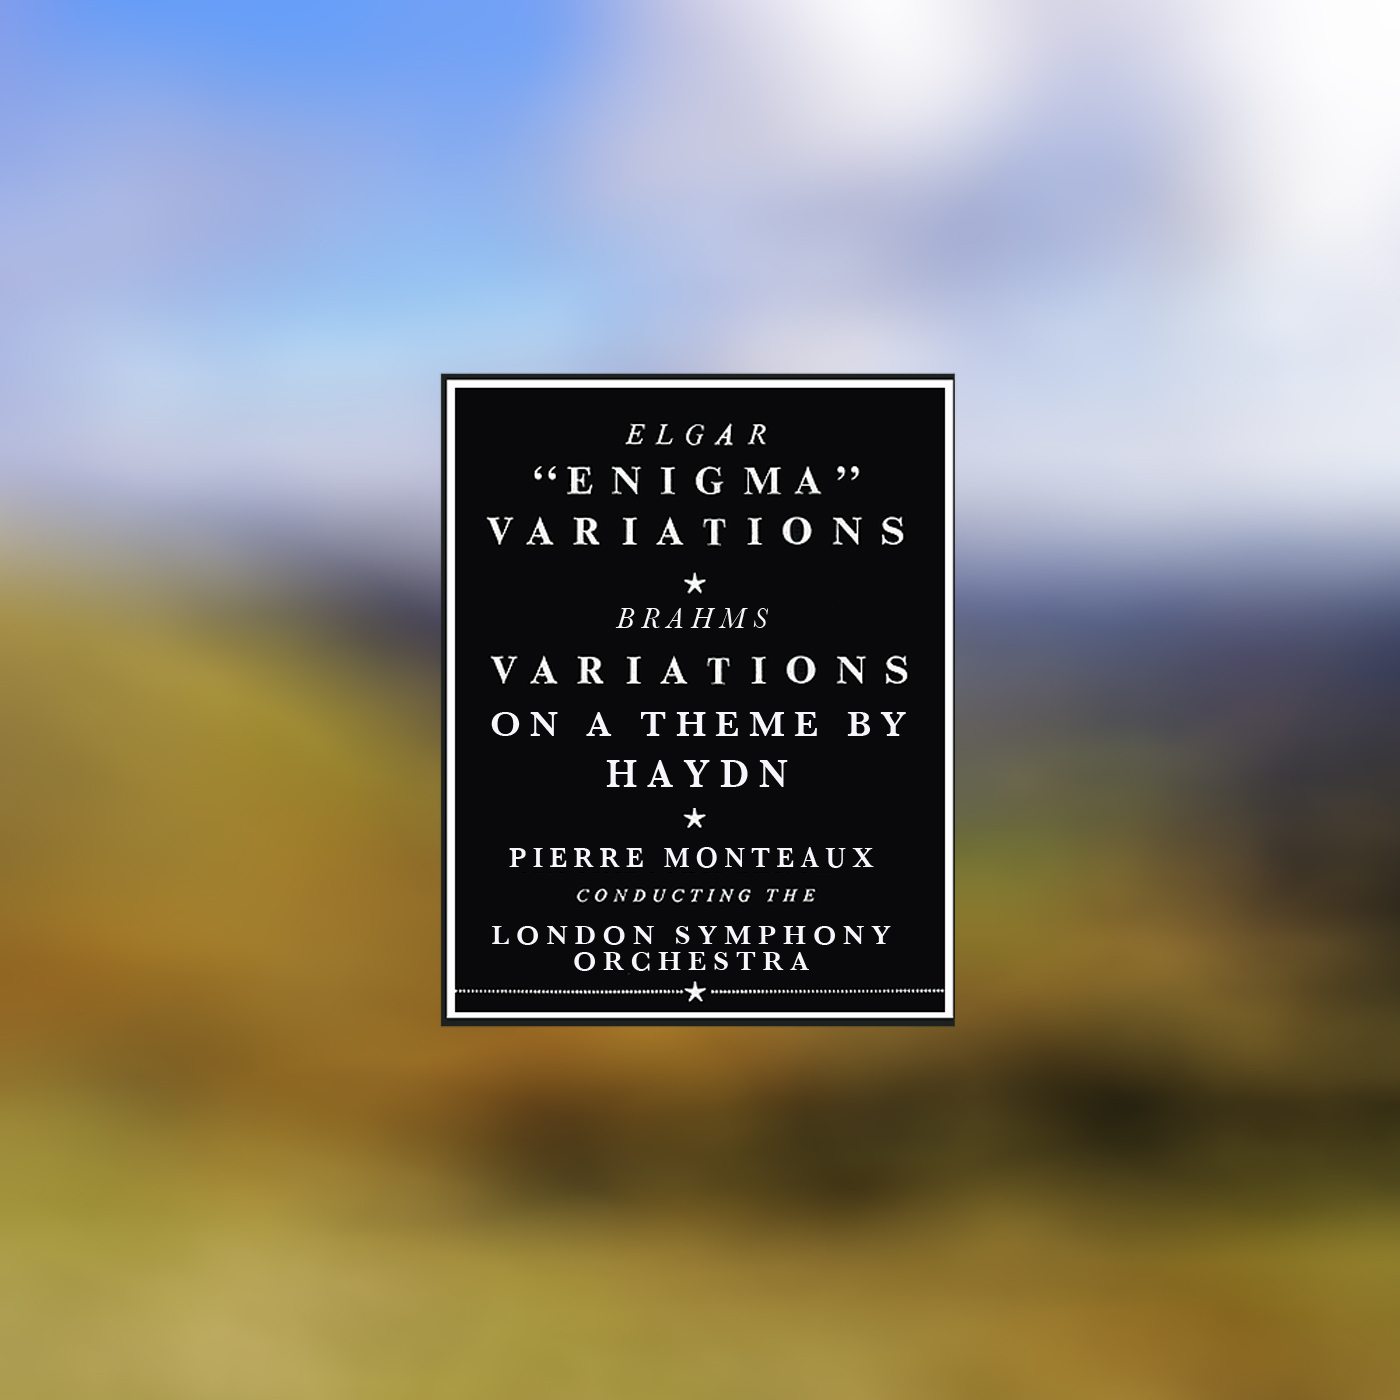 Elgar: Variations On an Original Theme, Op. 36 "Enigma Variations"  - Brahms: Variations On a Theme by Haydn, Op. 56a